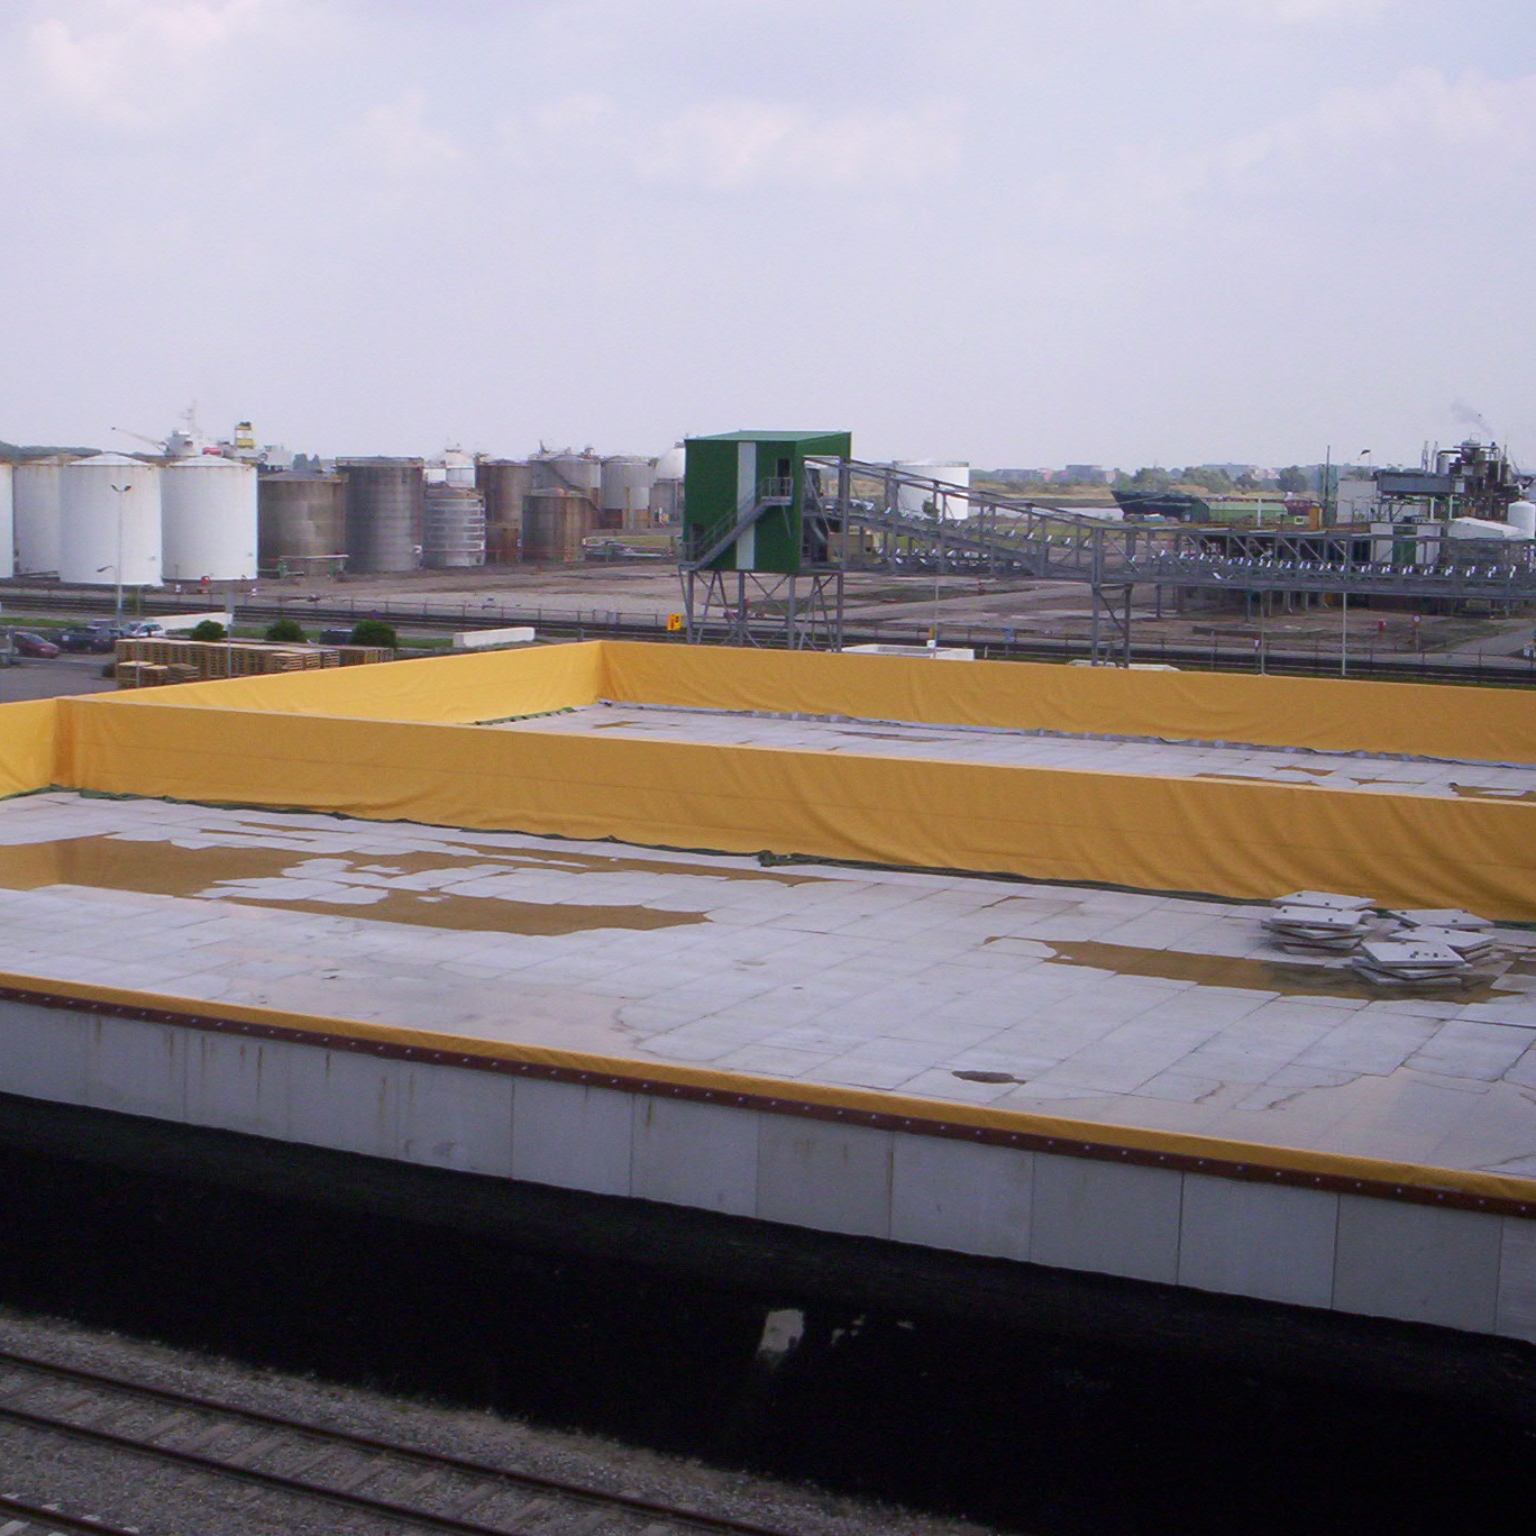 Vuil water bassin voor proceswater van bio ethanol productie